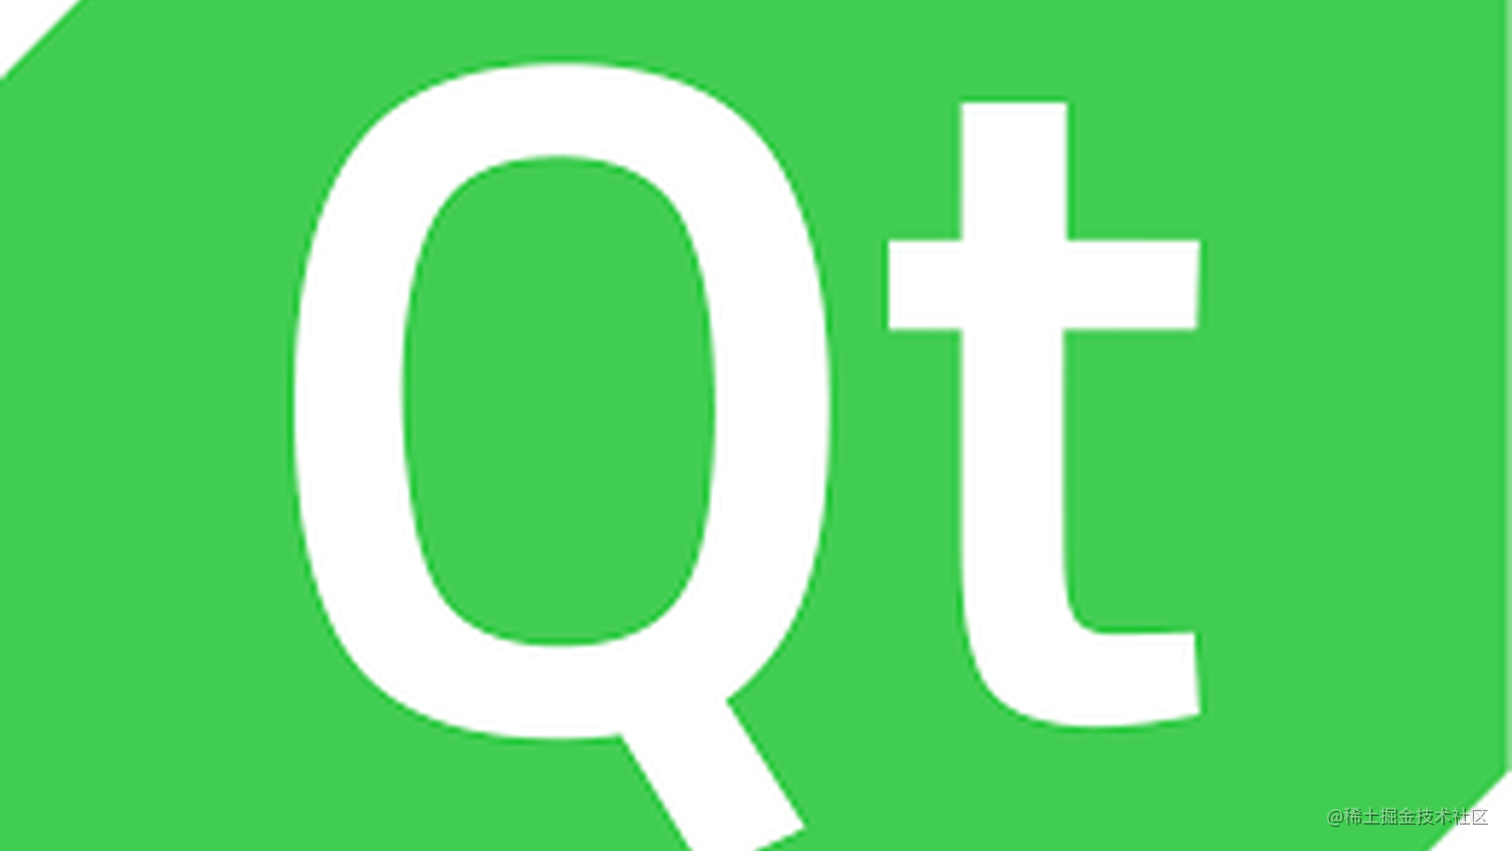 跨平台播放器开发 (一) QT for MAC OS & FFmpeg 环境搭建